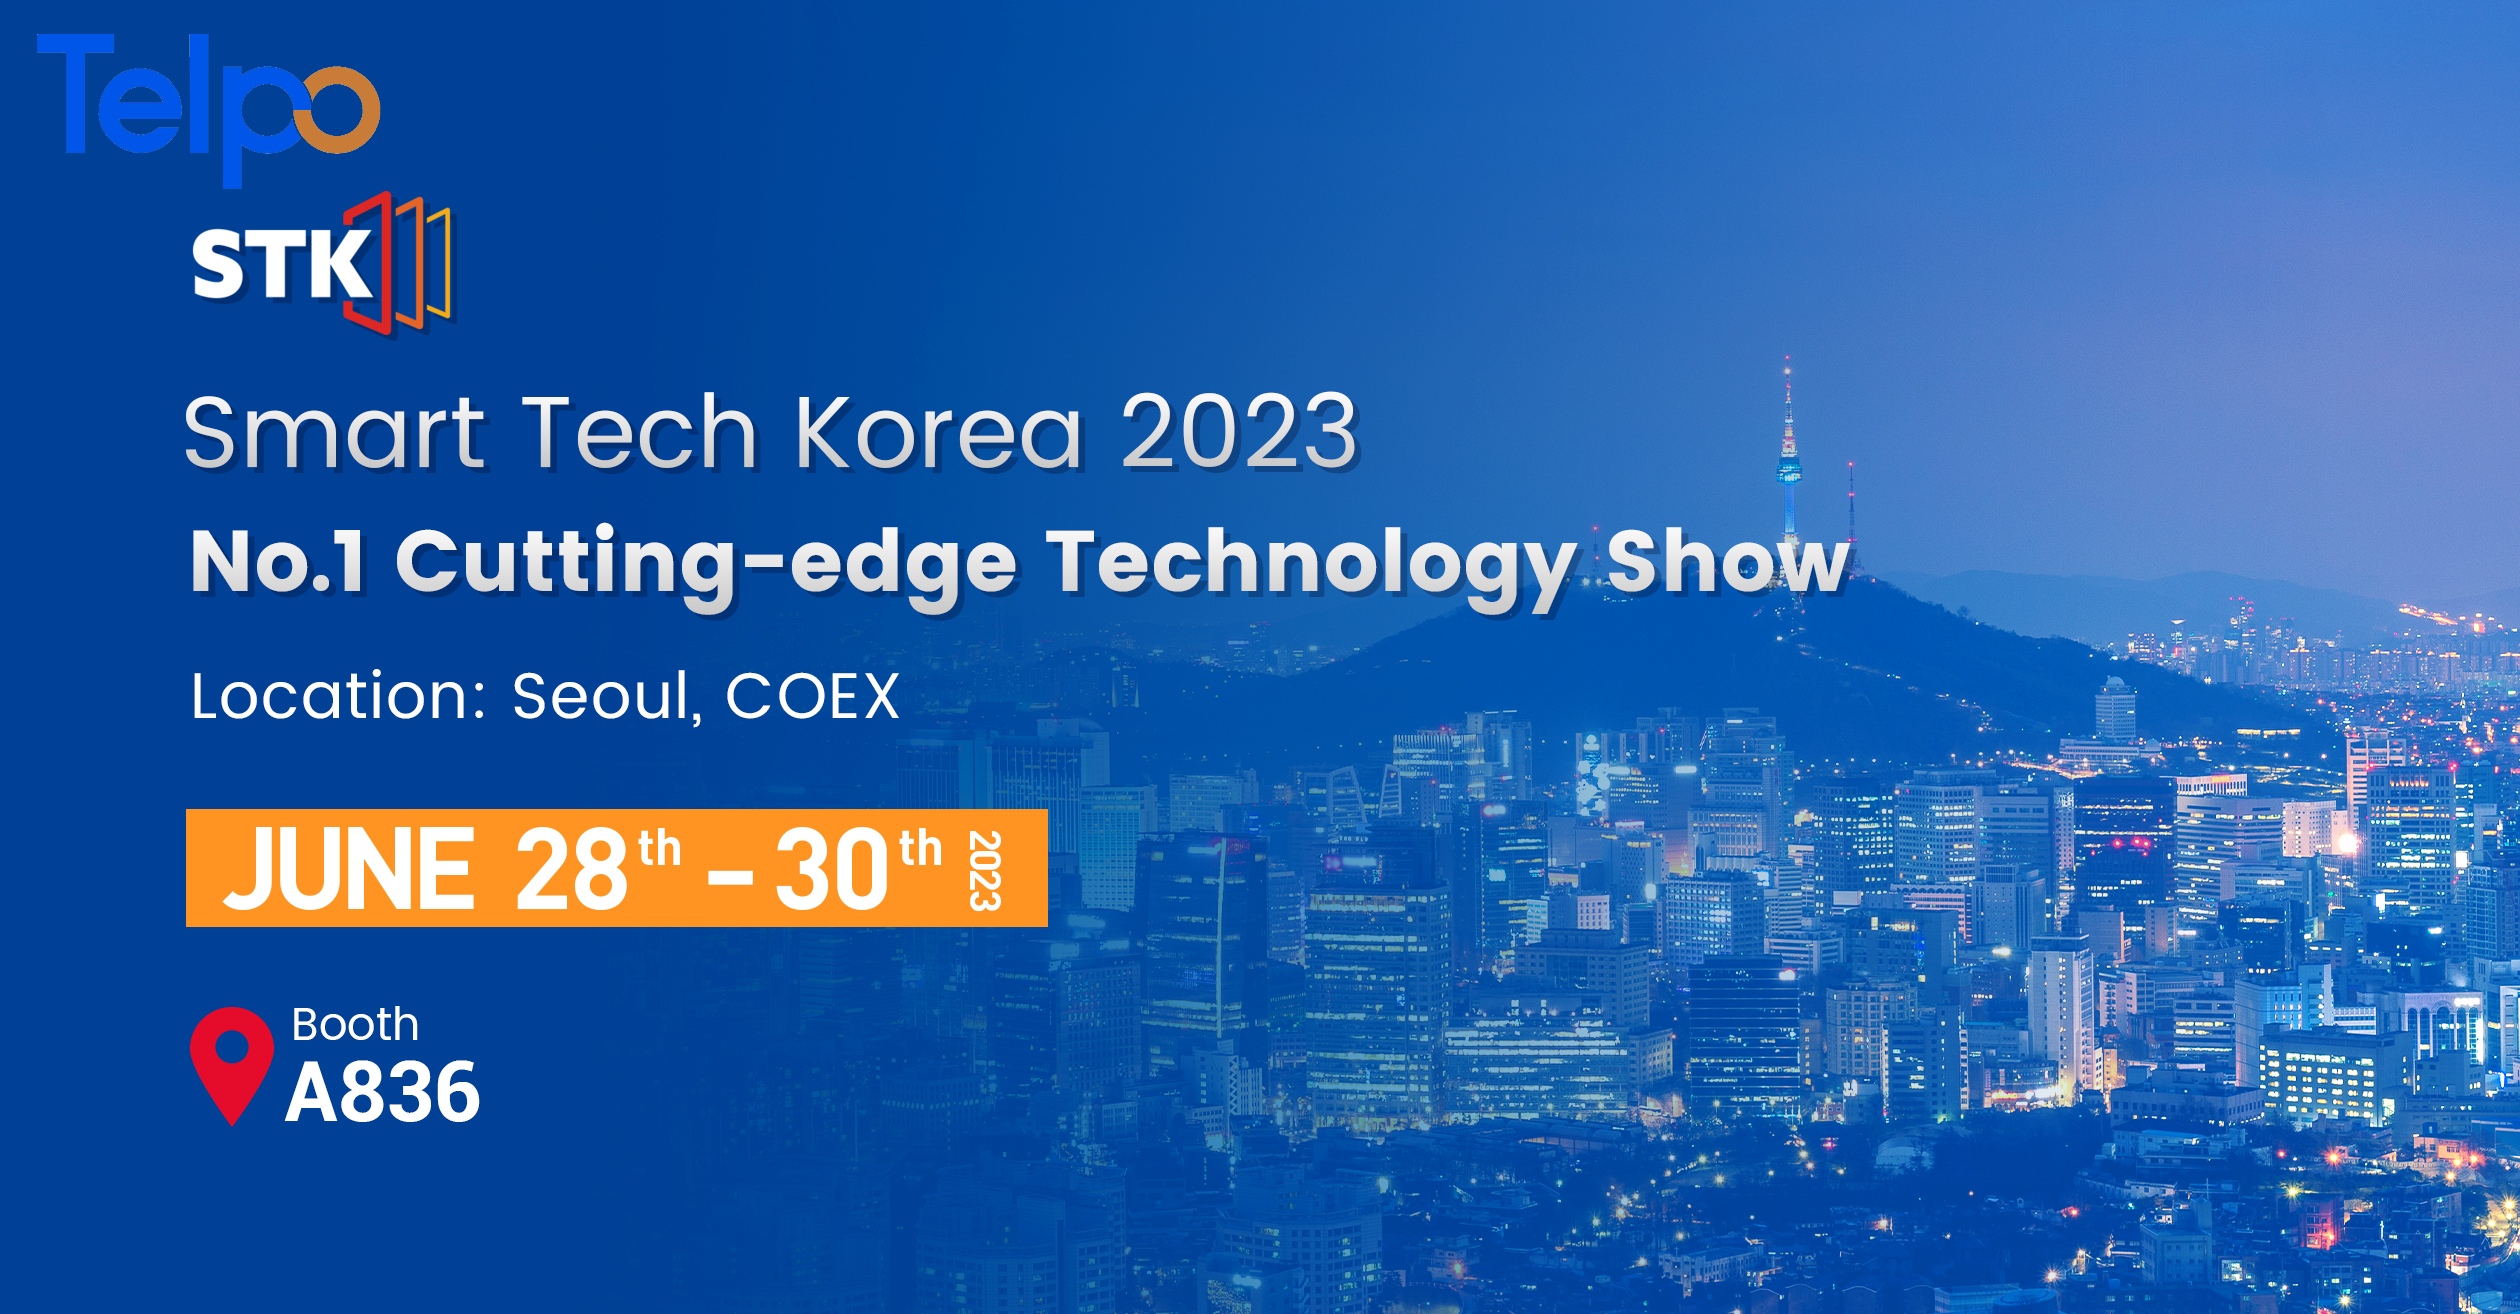 Telpo will attend exhibition smart tech korea 2023